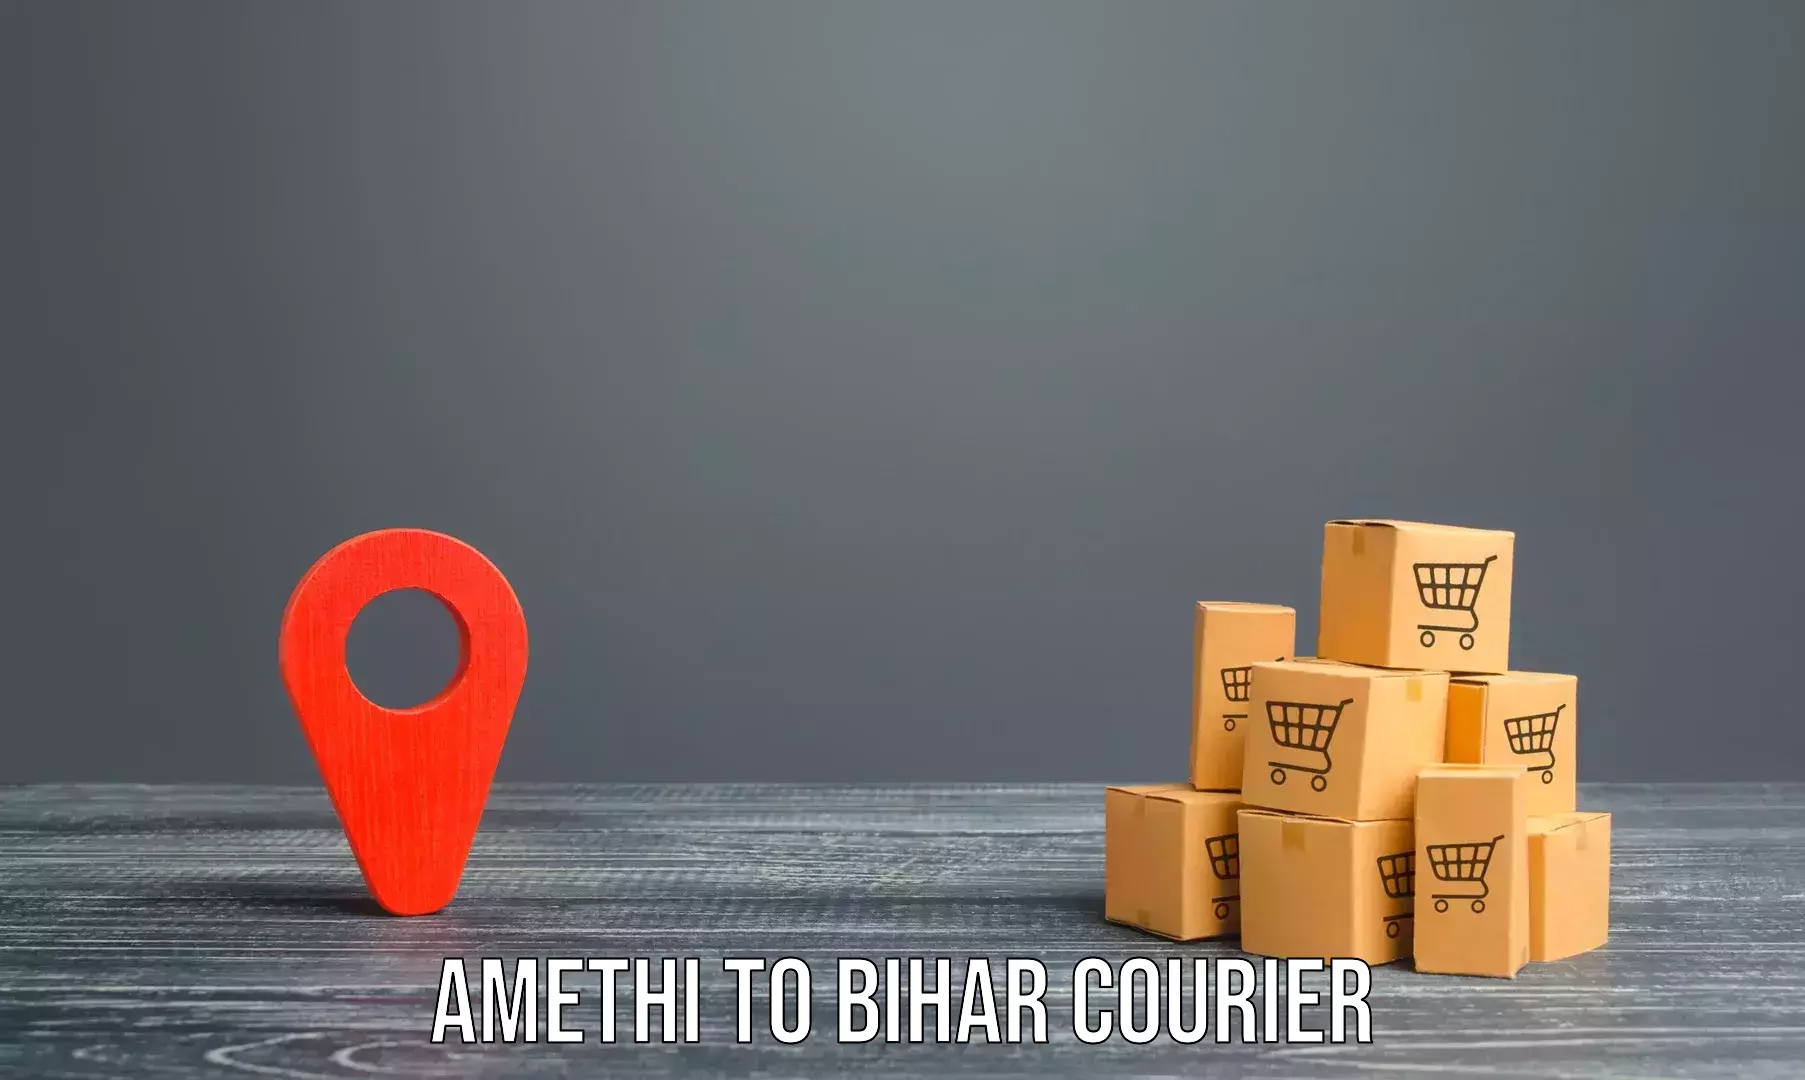 Professional furniture shifting Amethi to Goh Aurangabad